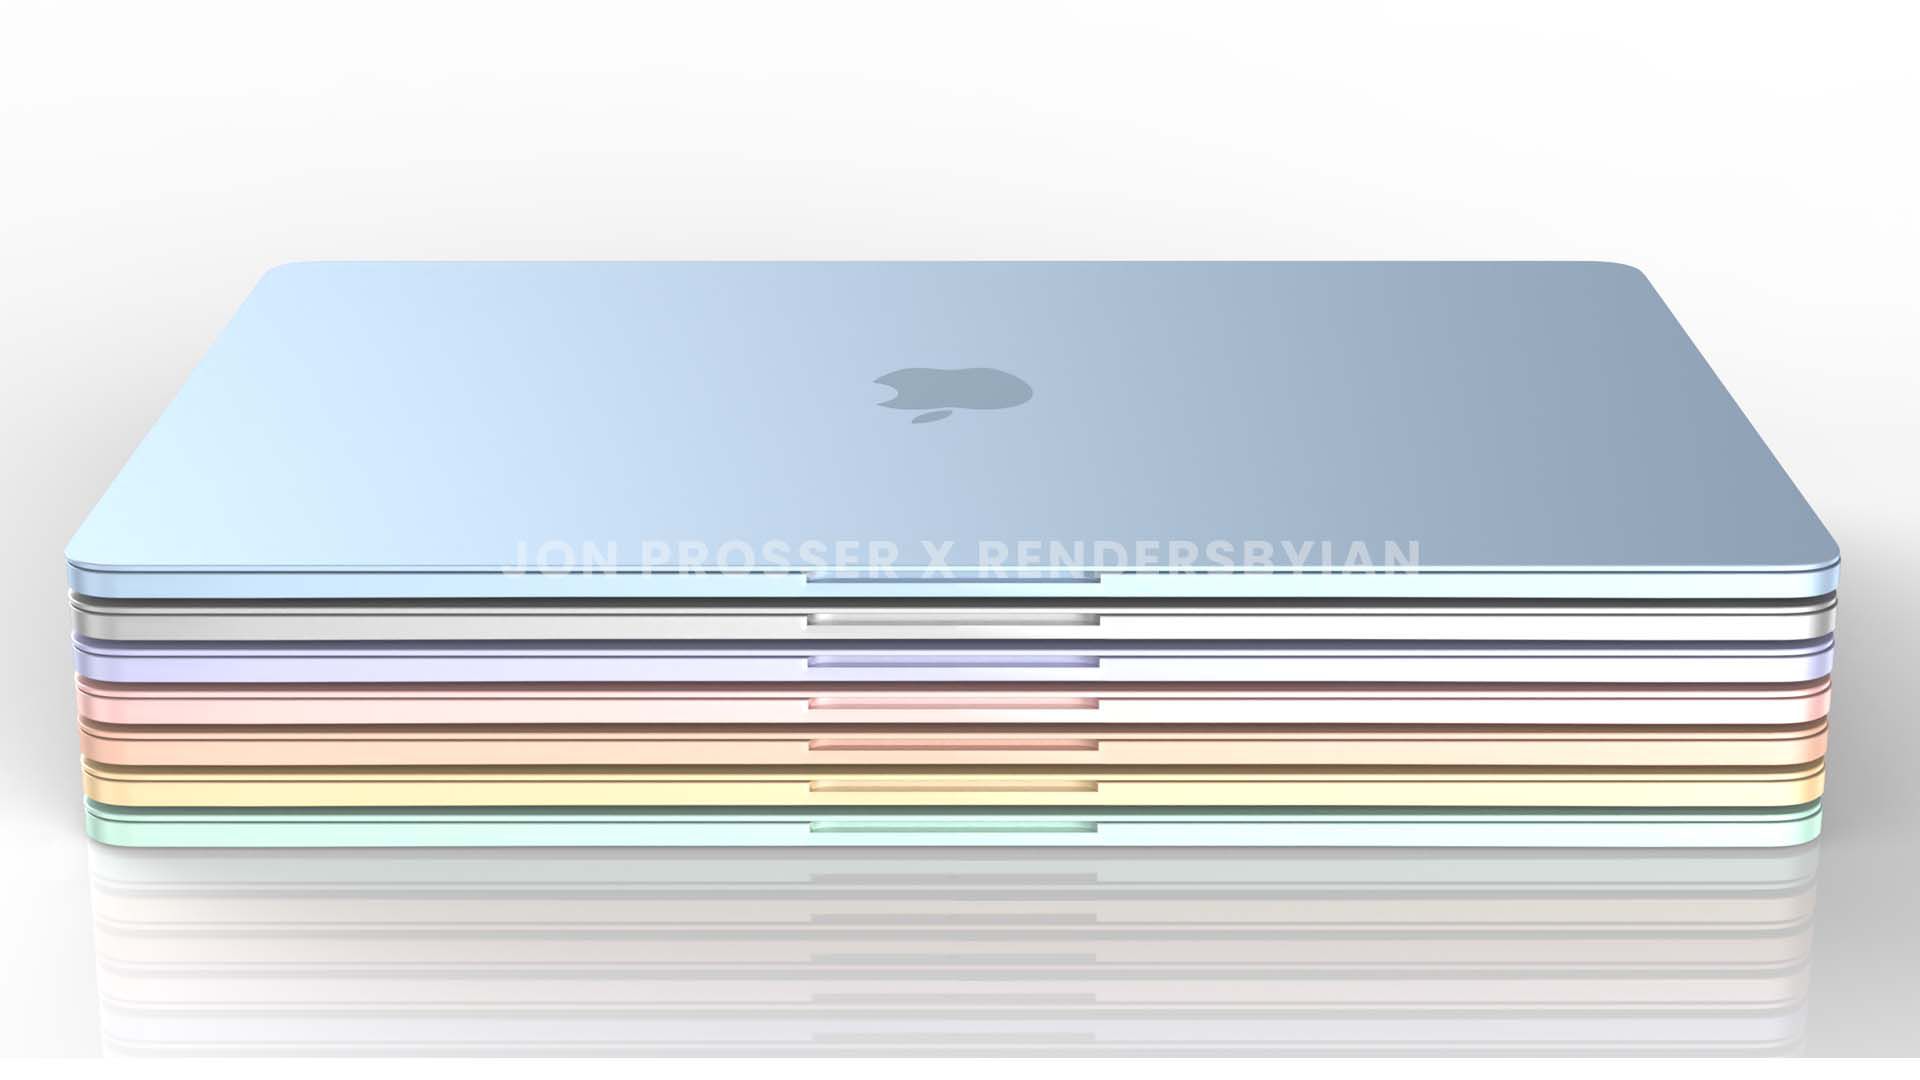 Images Reveal Colorful New MacBook Air Design - Mac Rumors